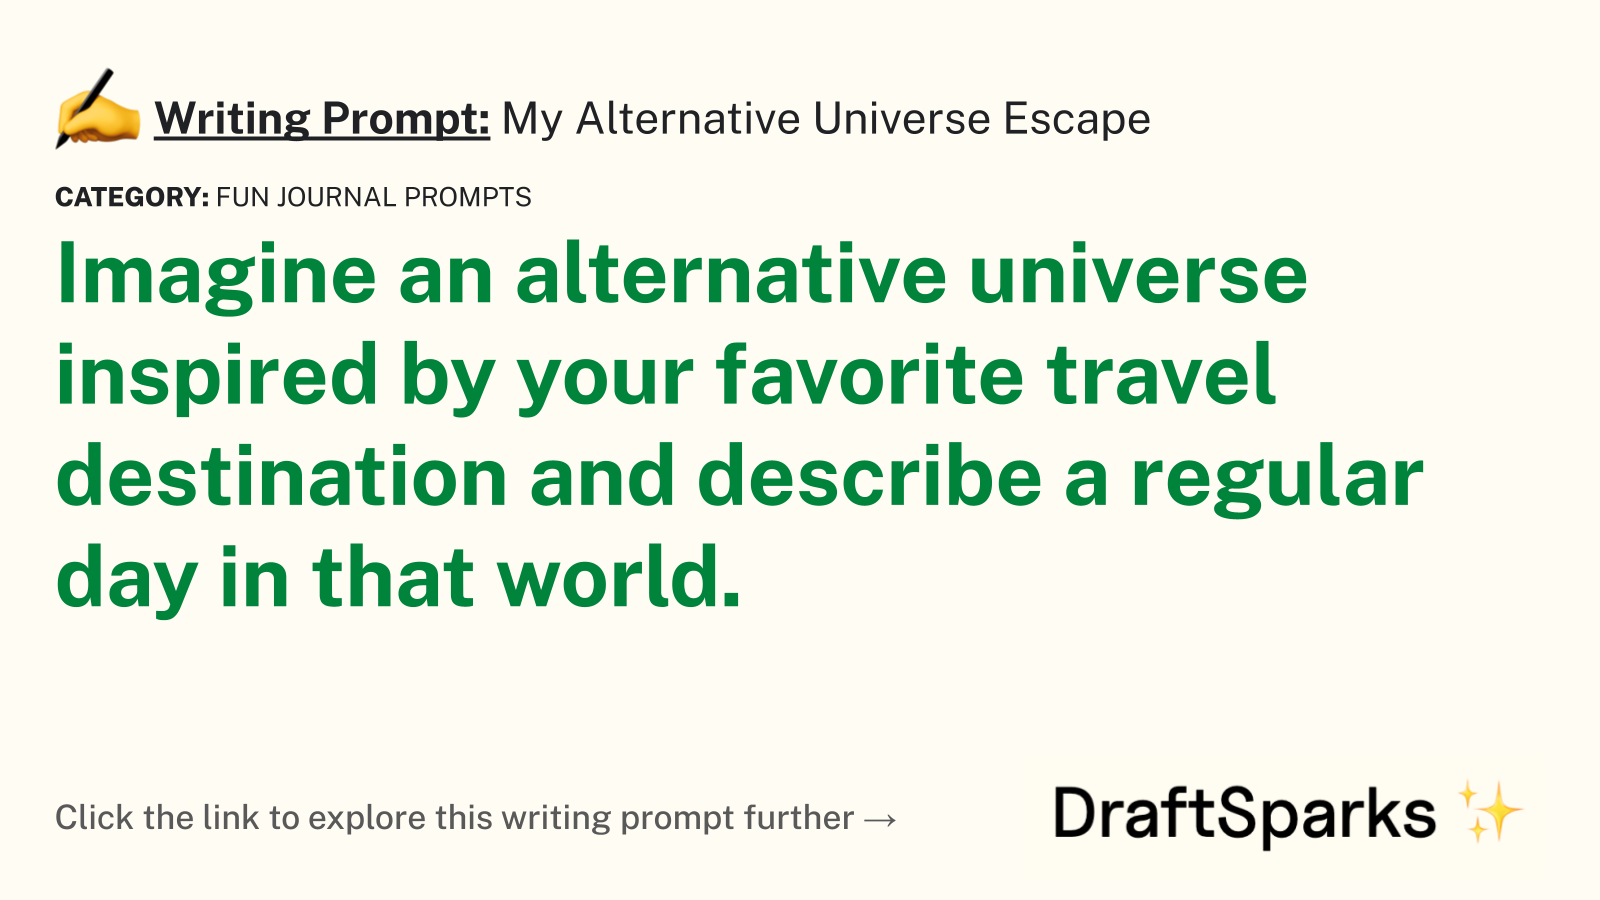 My Alternative Universe Escape